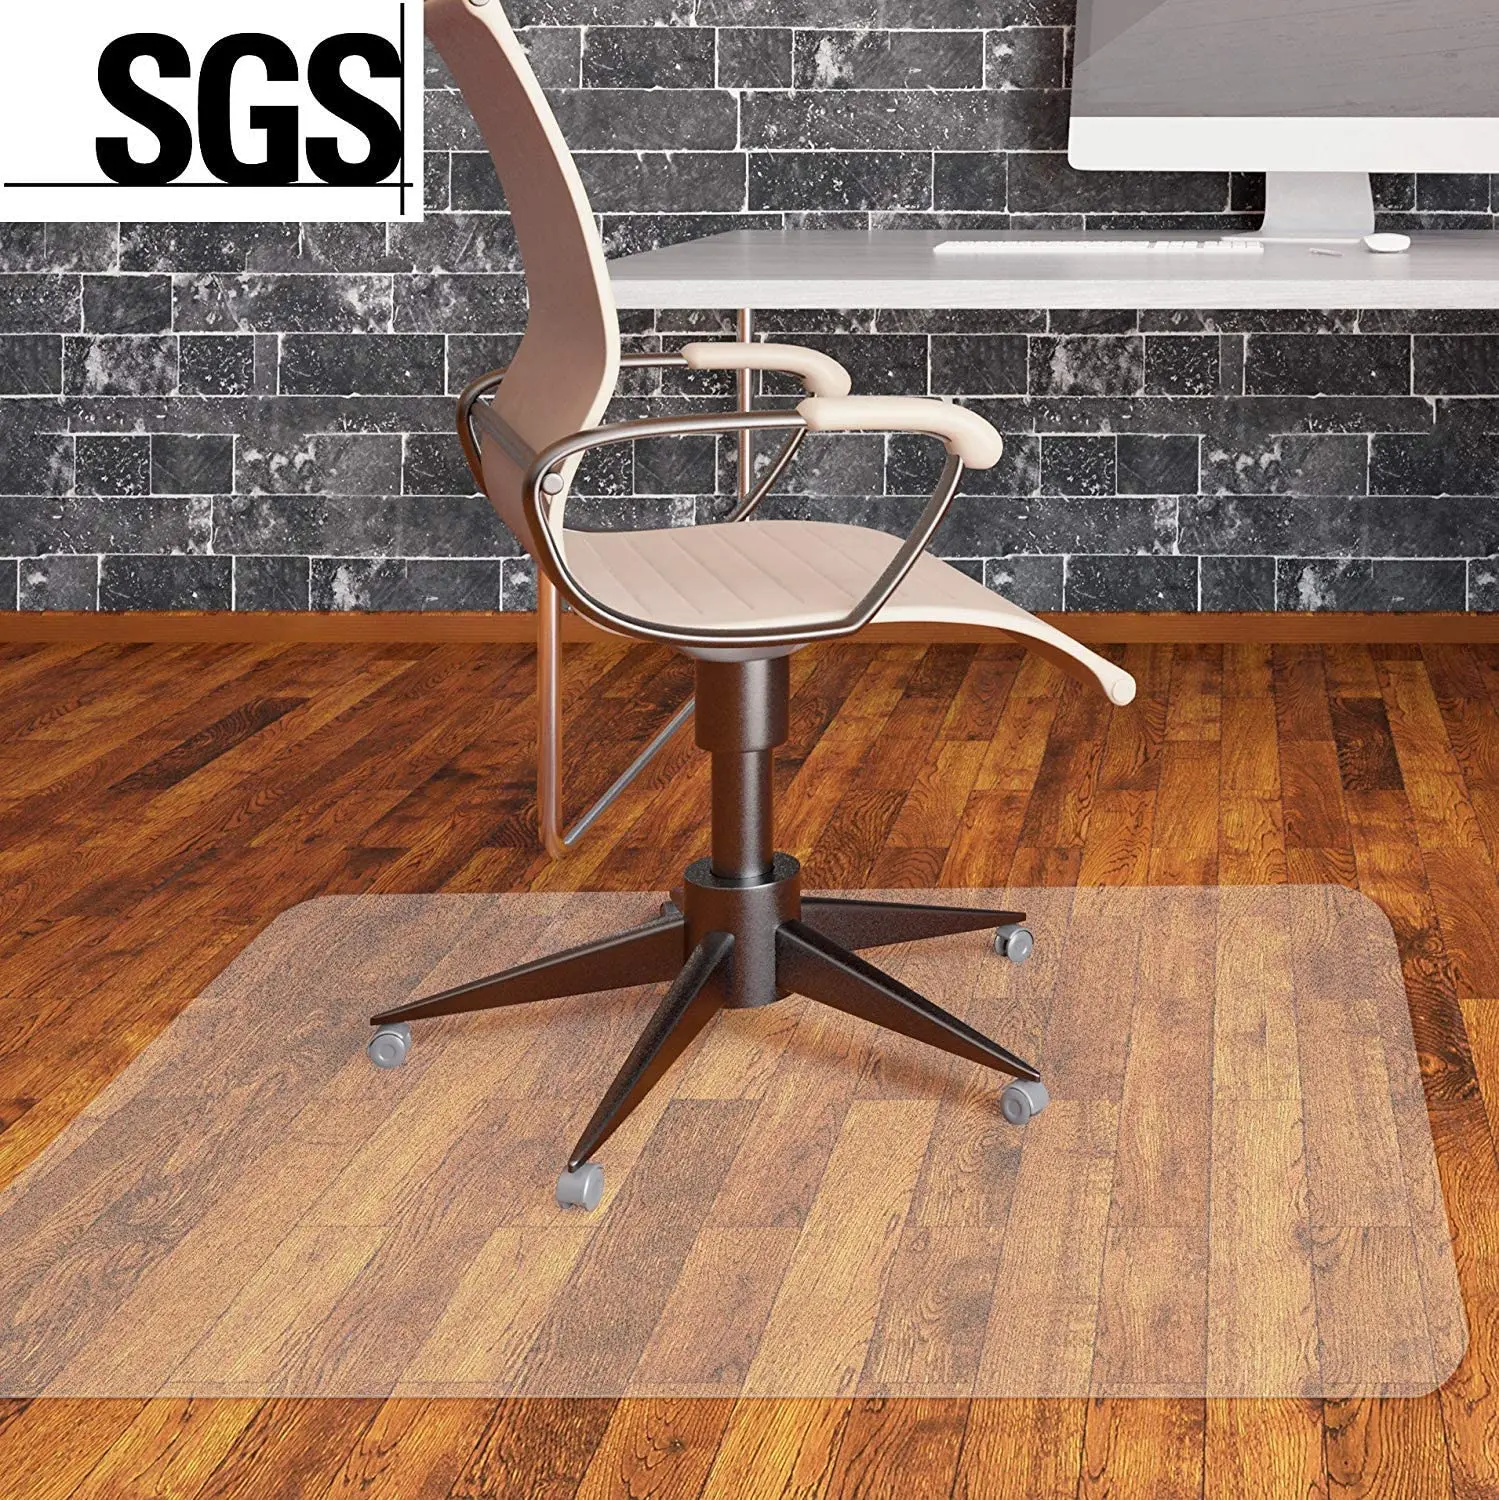 

Estera de protección de suelo de policarbonato de PVC para oficina, silla de oficina, suelos duros laminados,1200 x 900 x 1,5 mm